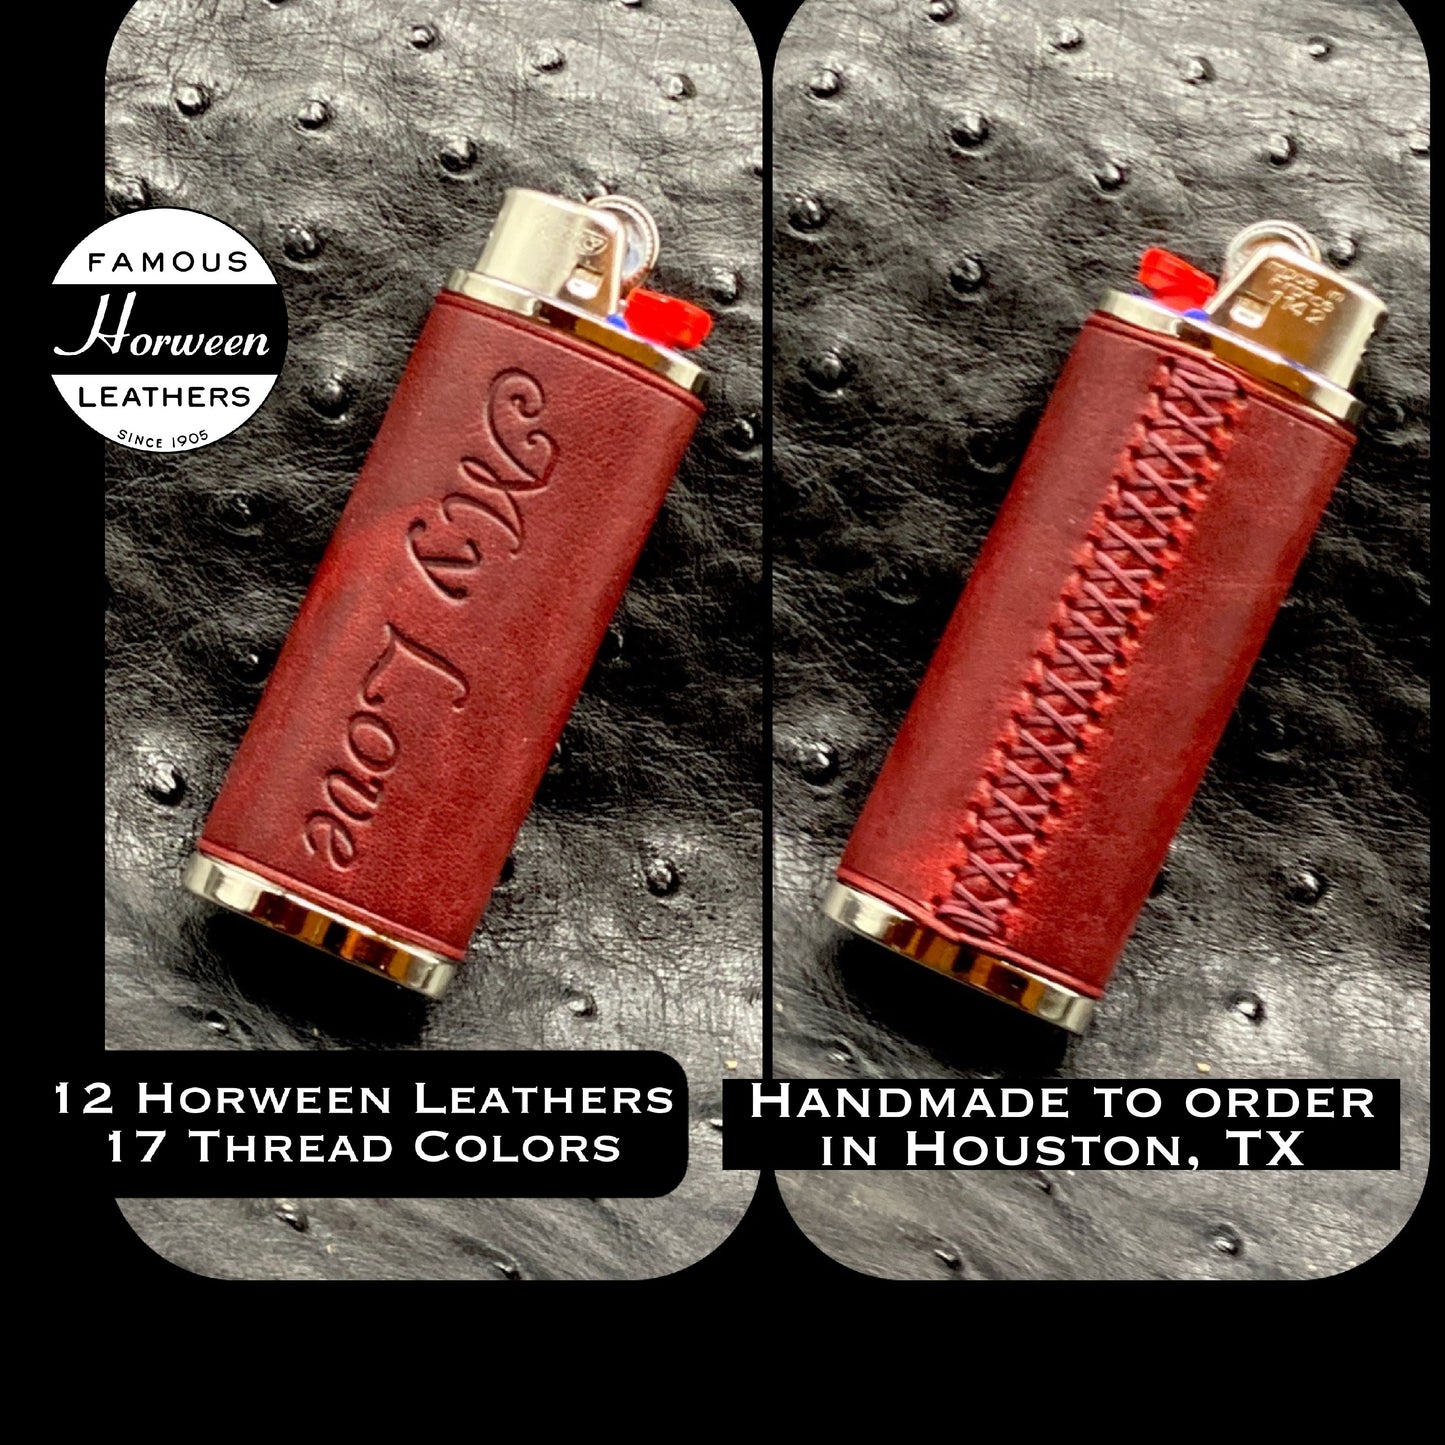 Love Lighter Case - Handmade custom bic lighter case in London Red Horween leather, cigarette lighter in English Tan, handmade lighter cover